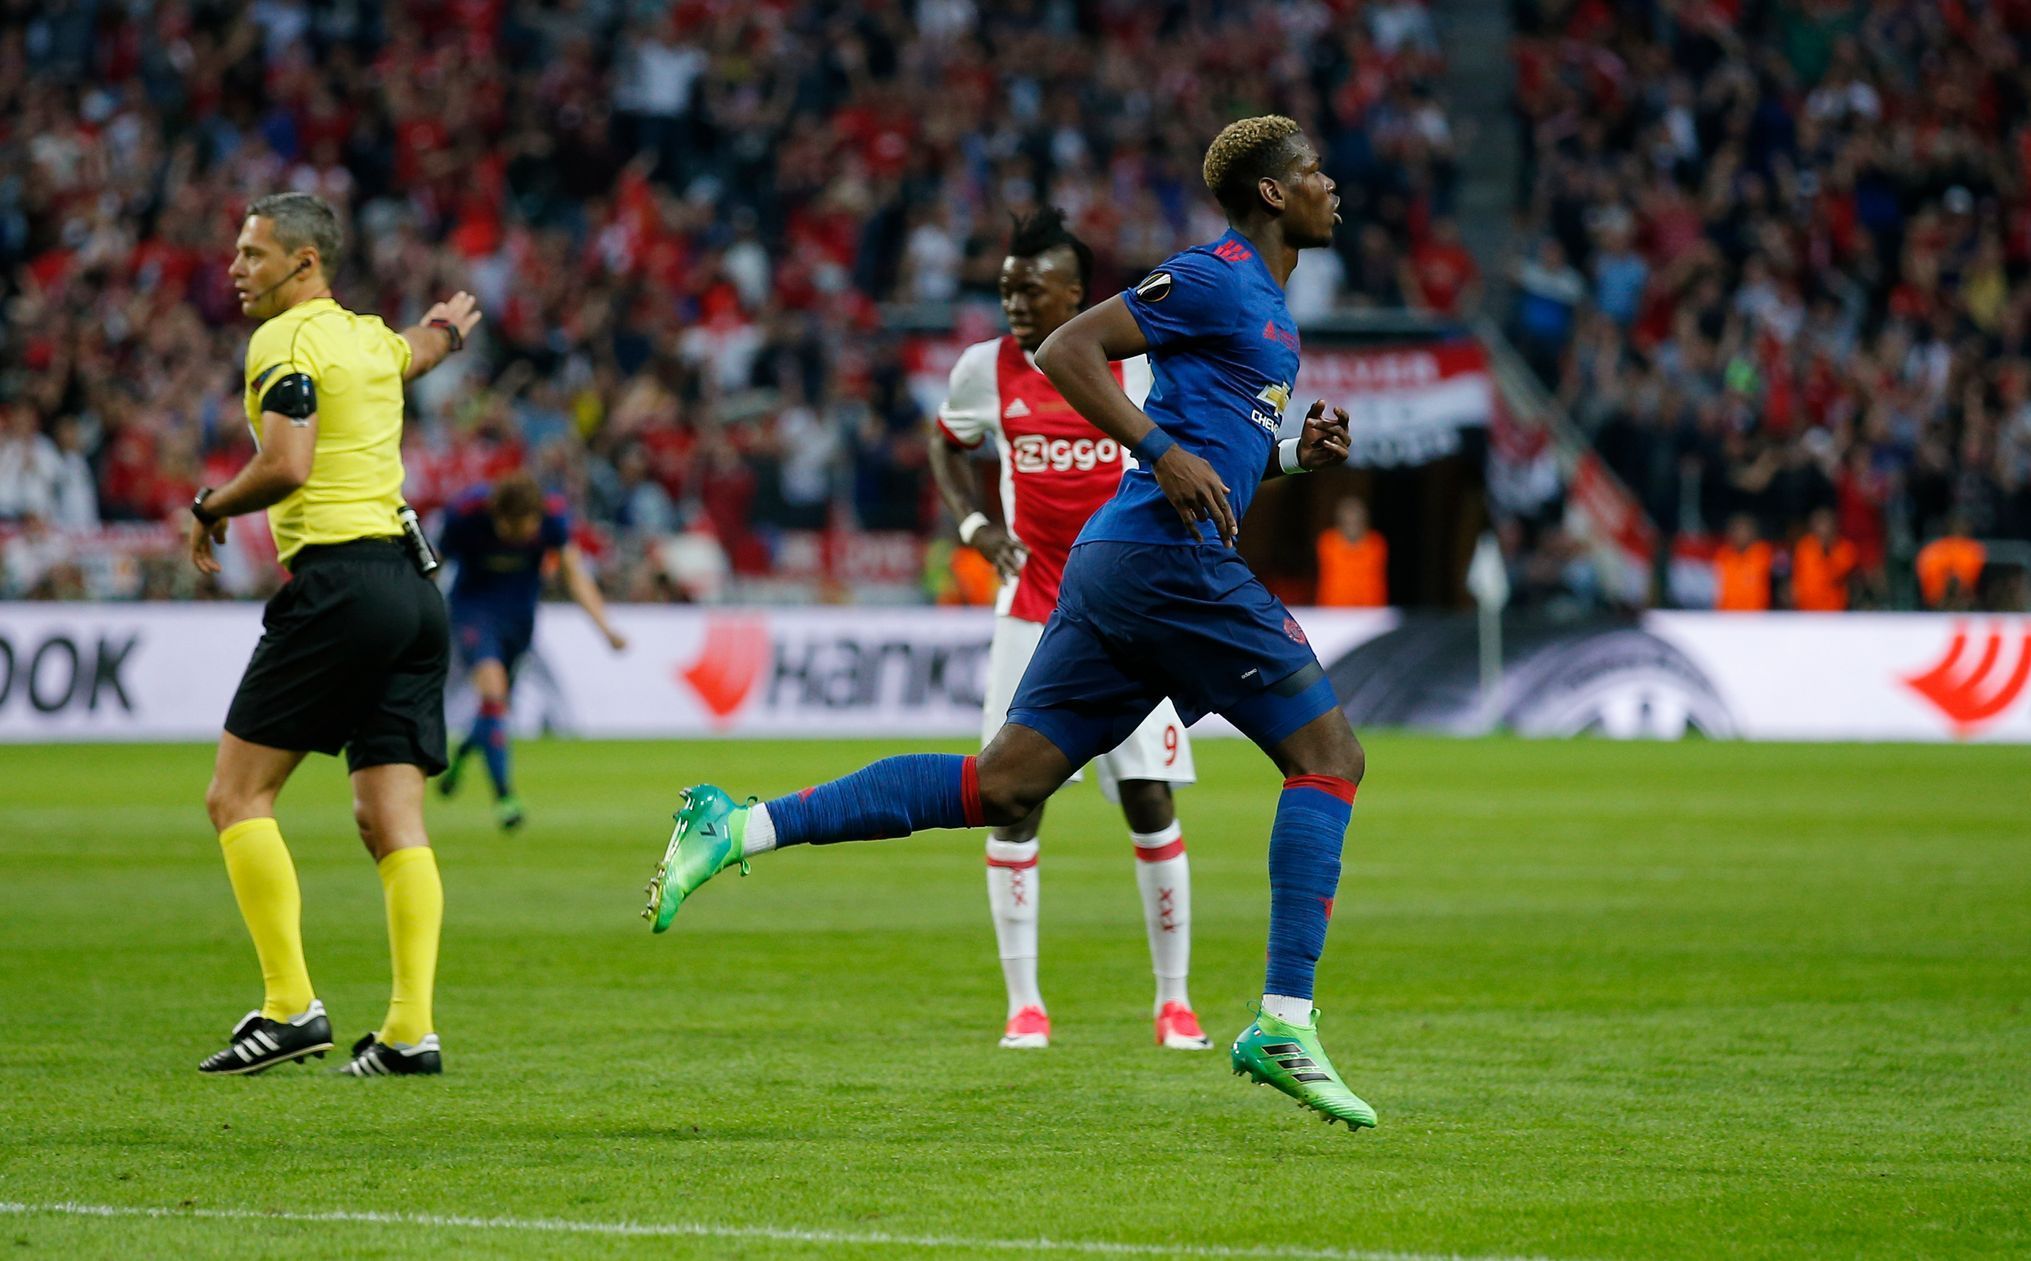 Finále Evropské ligy mezi Manchesterem United a Ajaxem Amsterdam